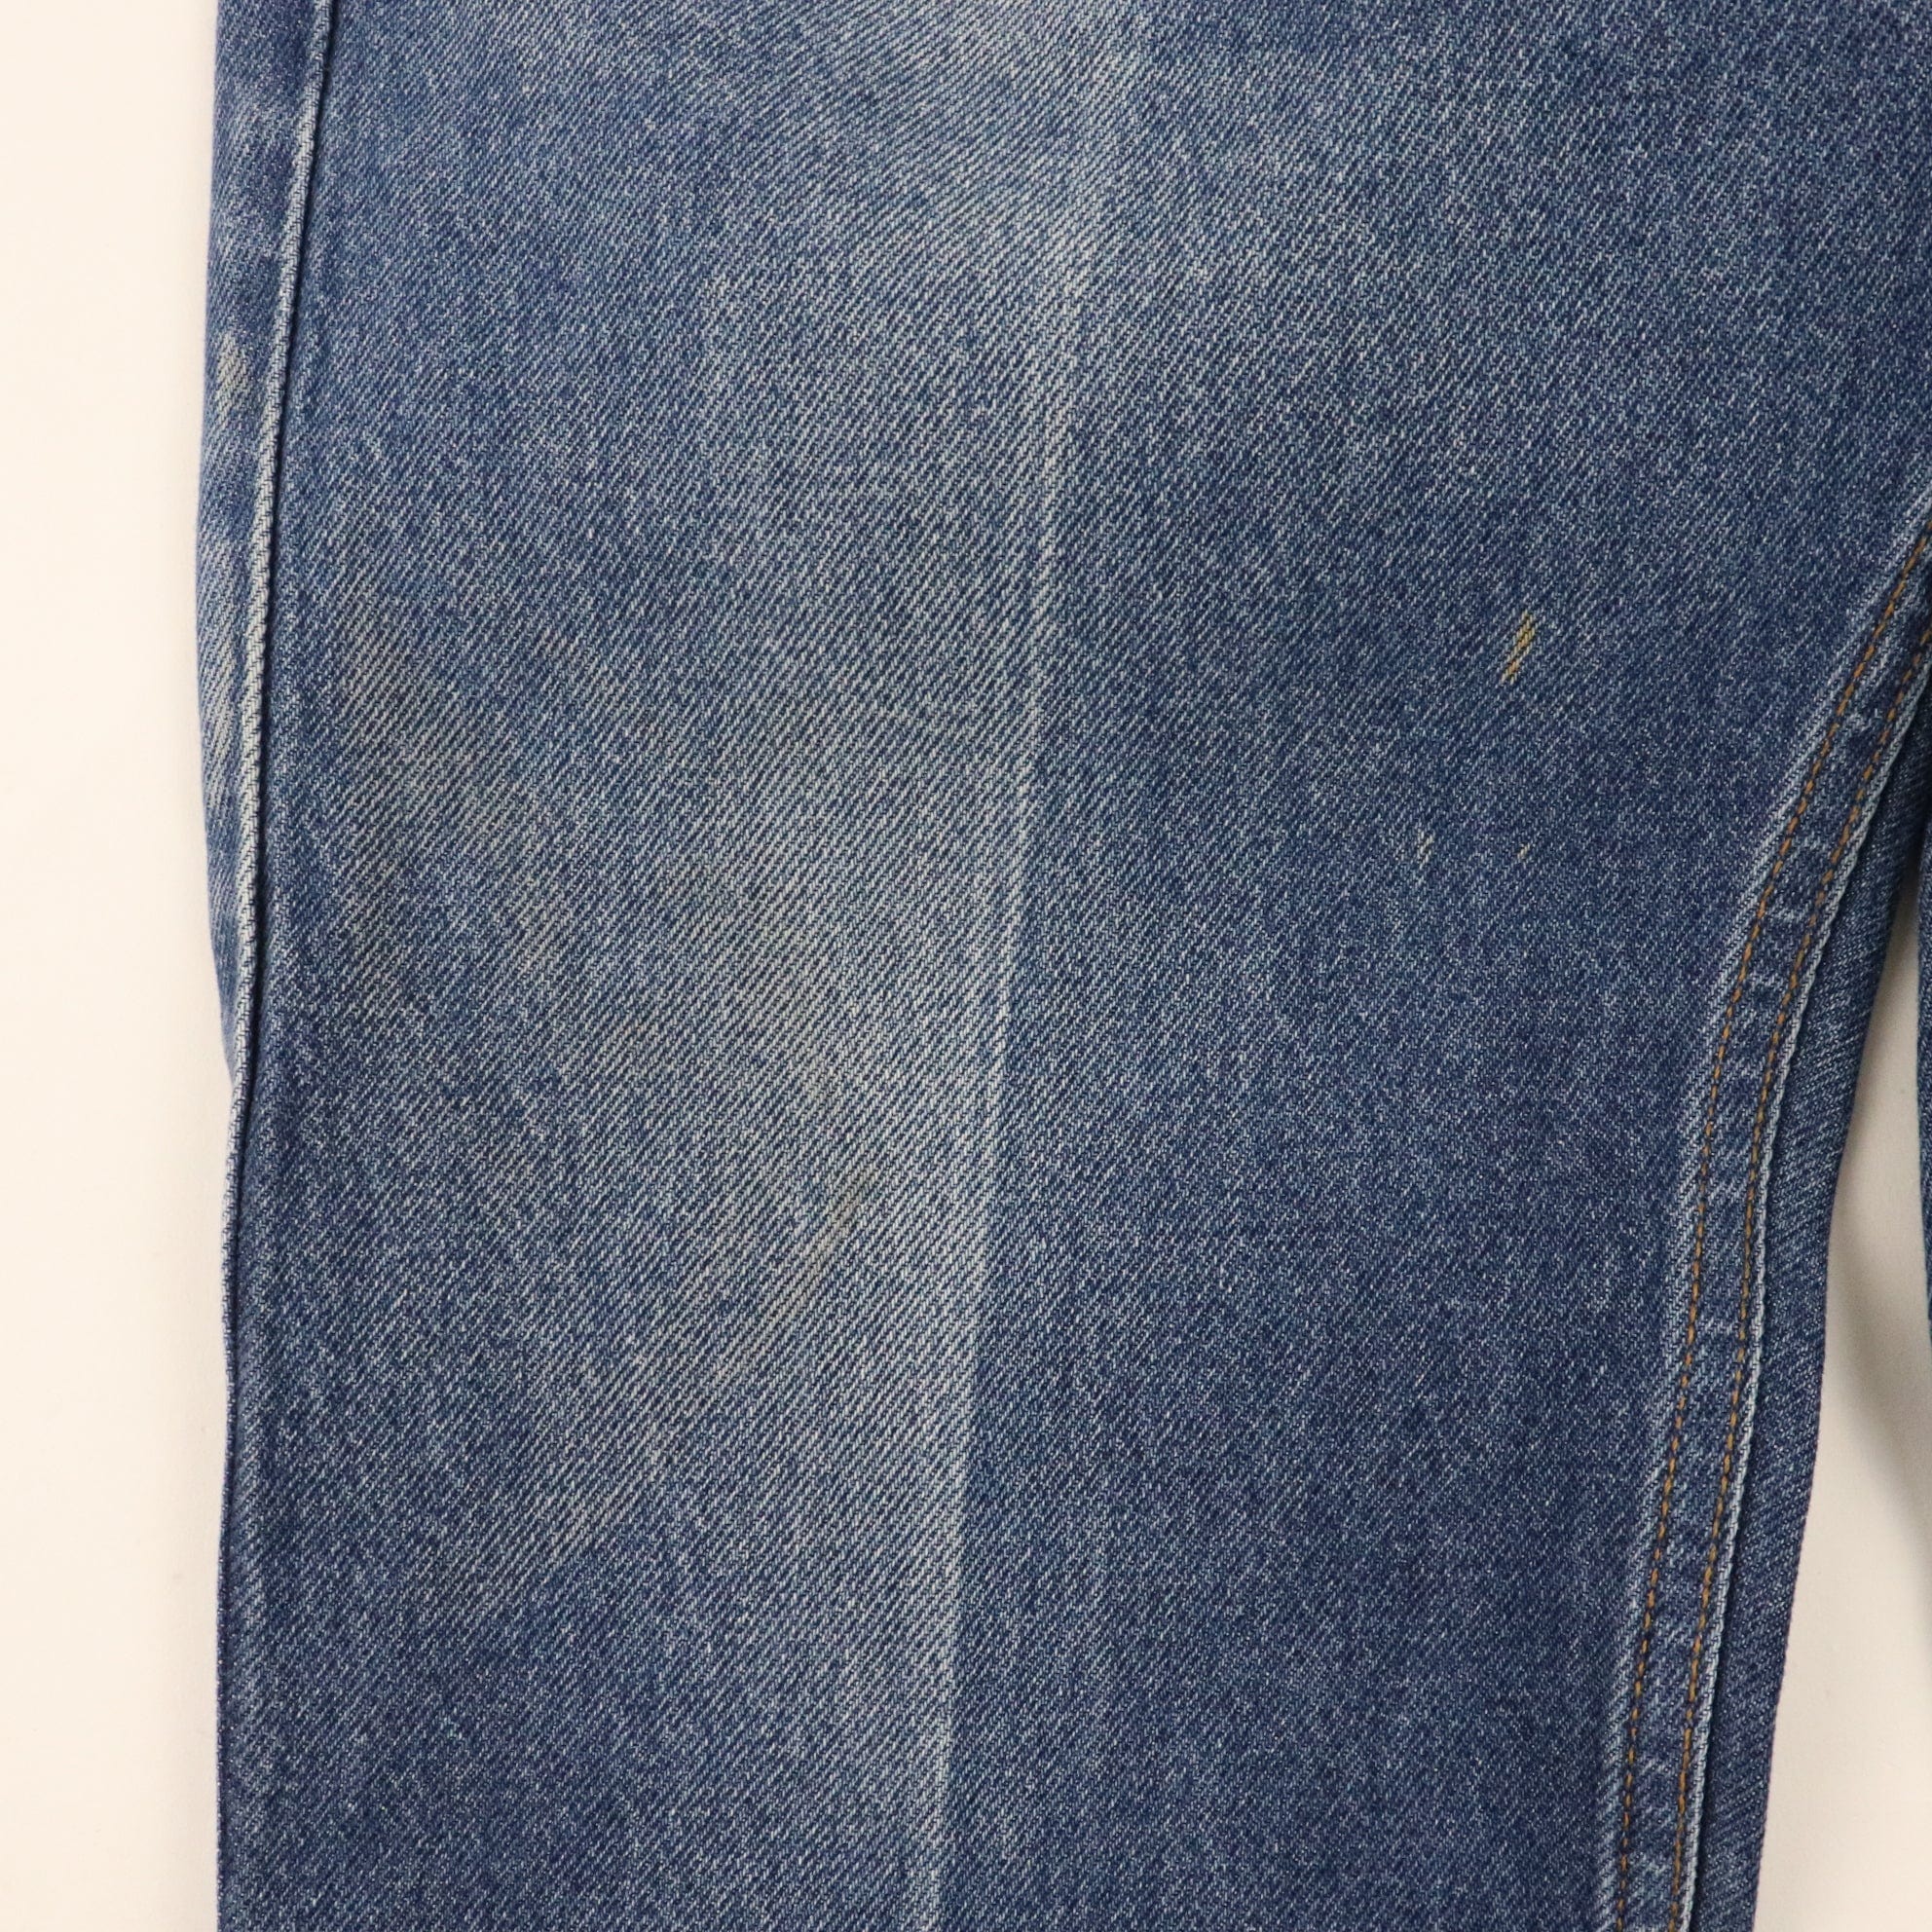 Vintage Levi's 517 Bootcut Starched Denim Jeans Size 33 x 29 Fits